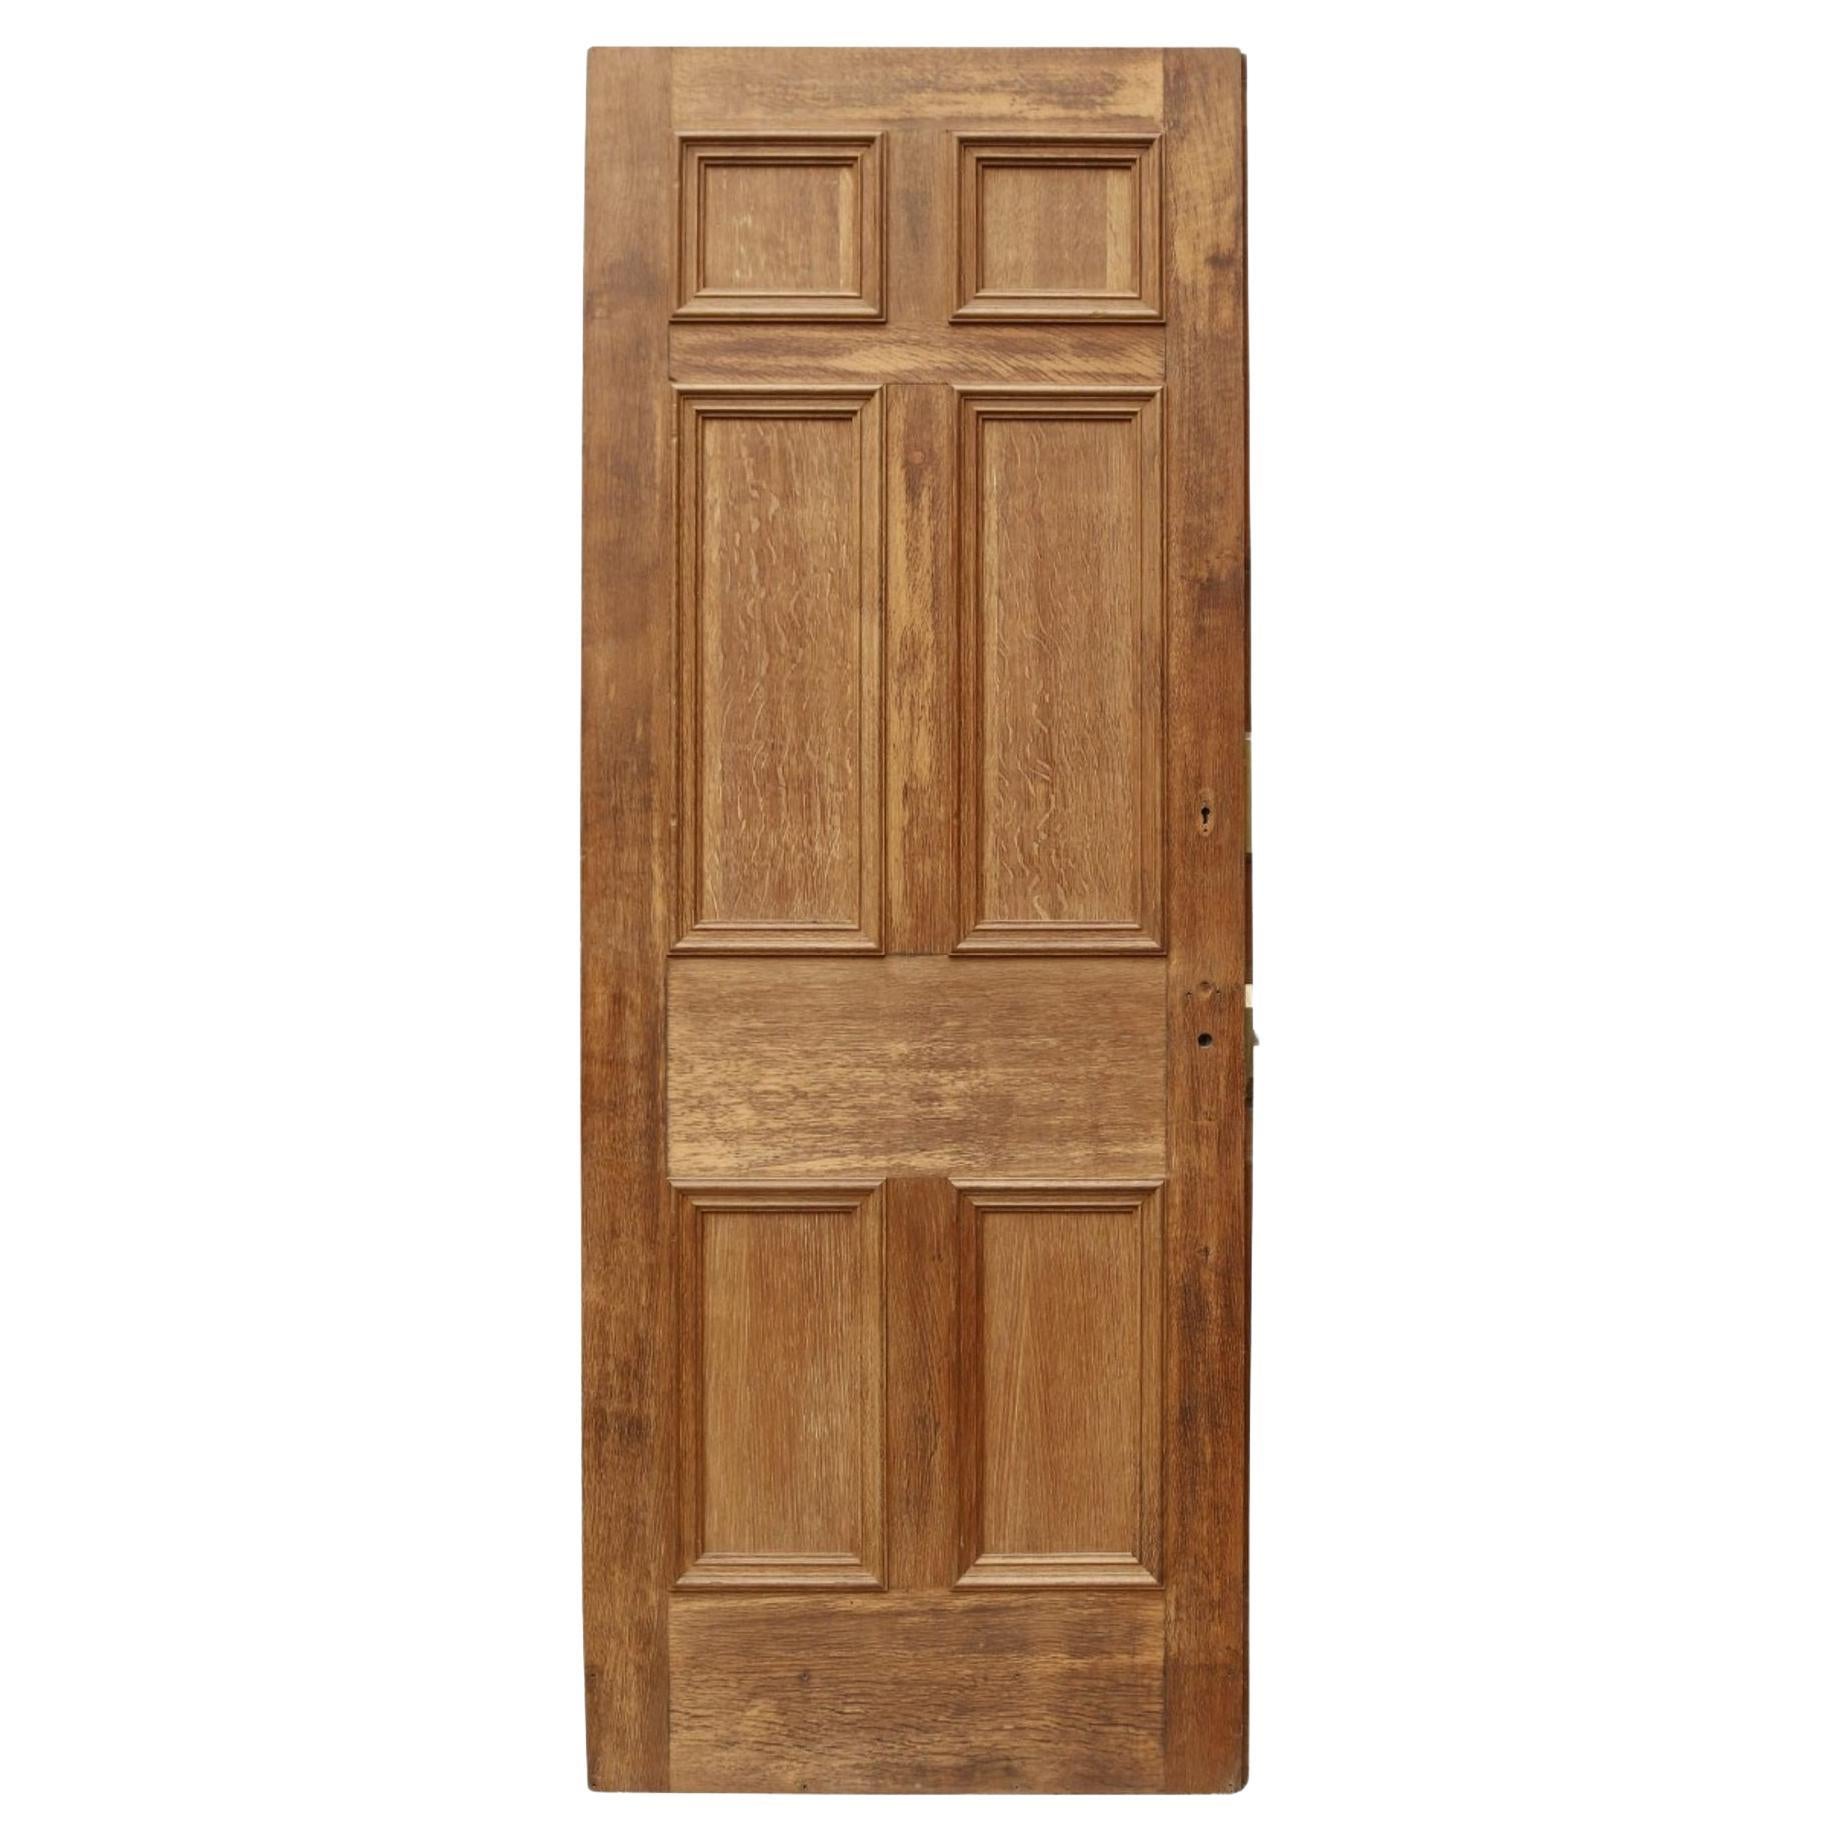 Antique Oak Exterior Door For Sale